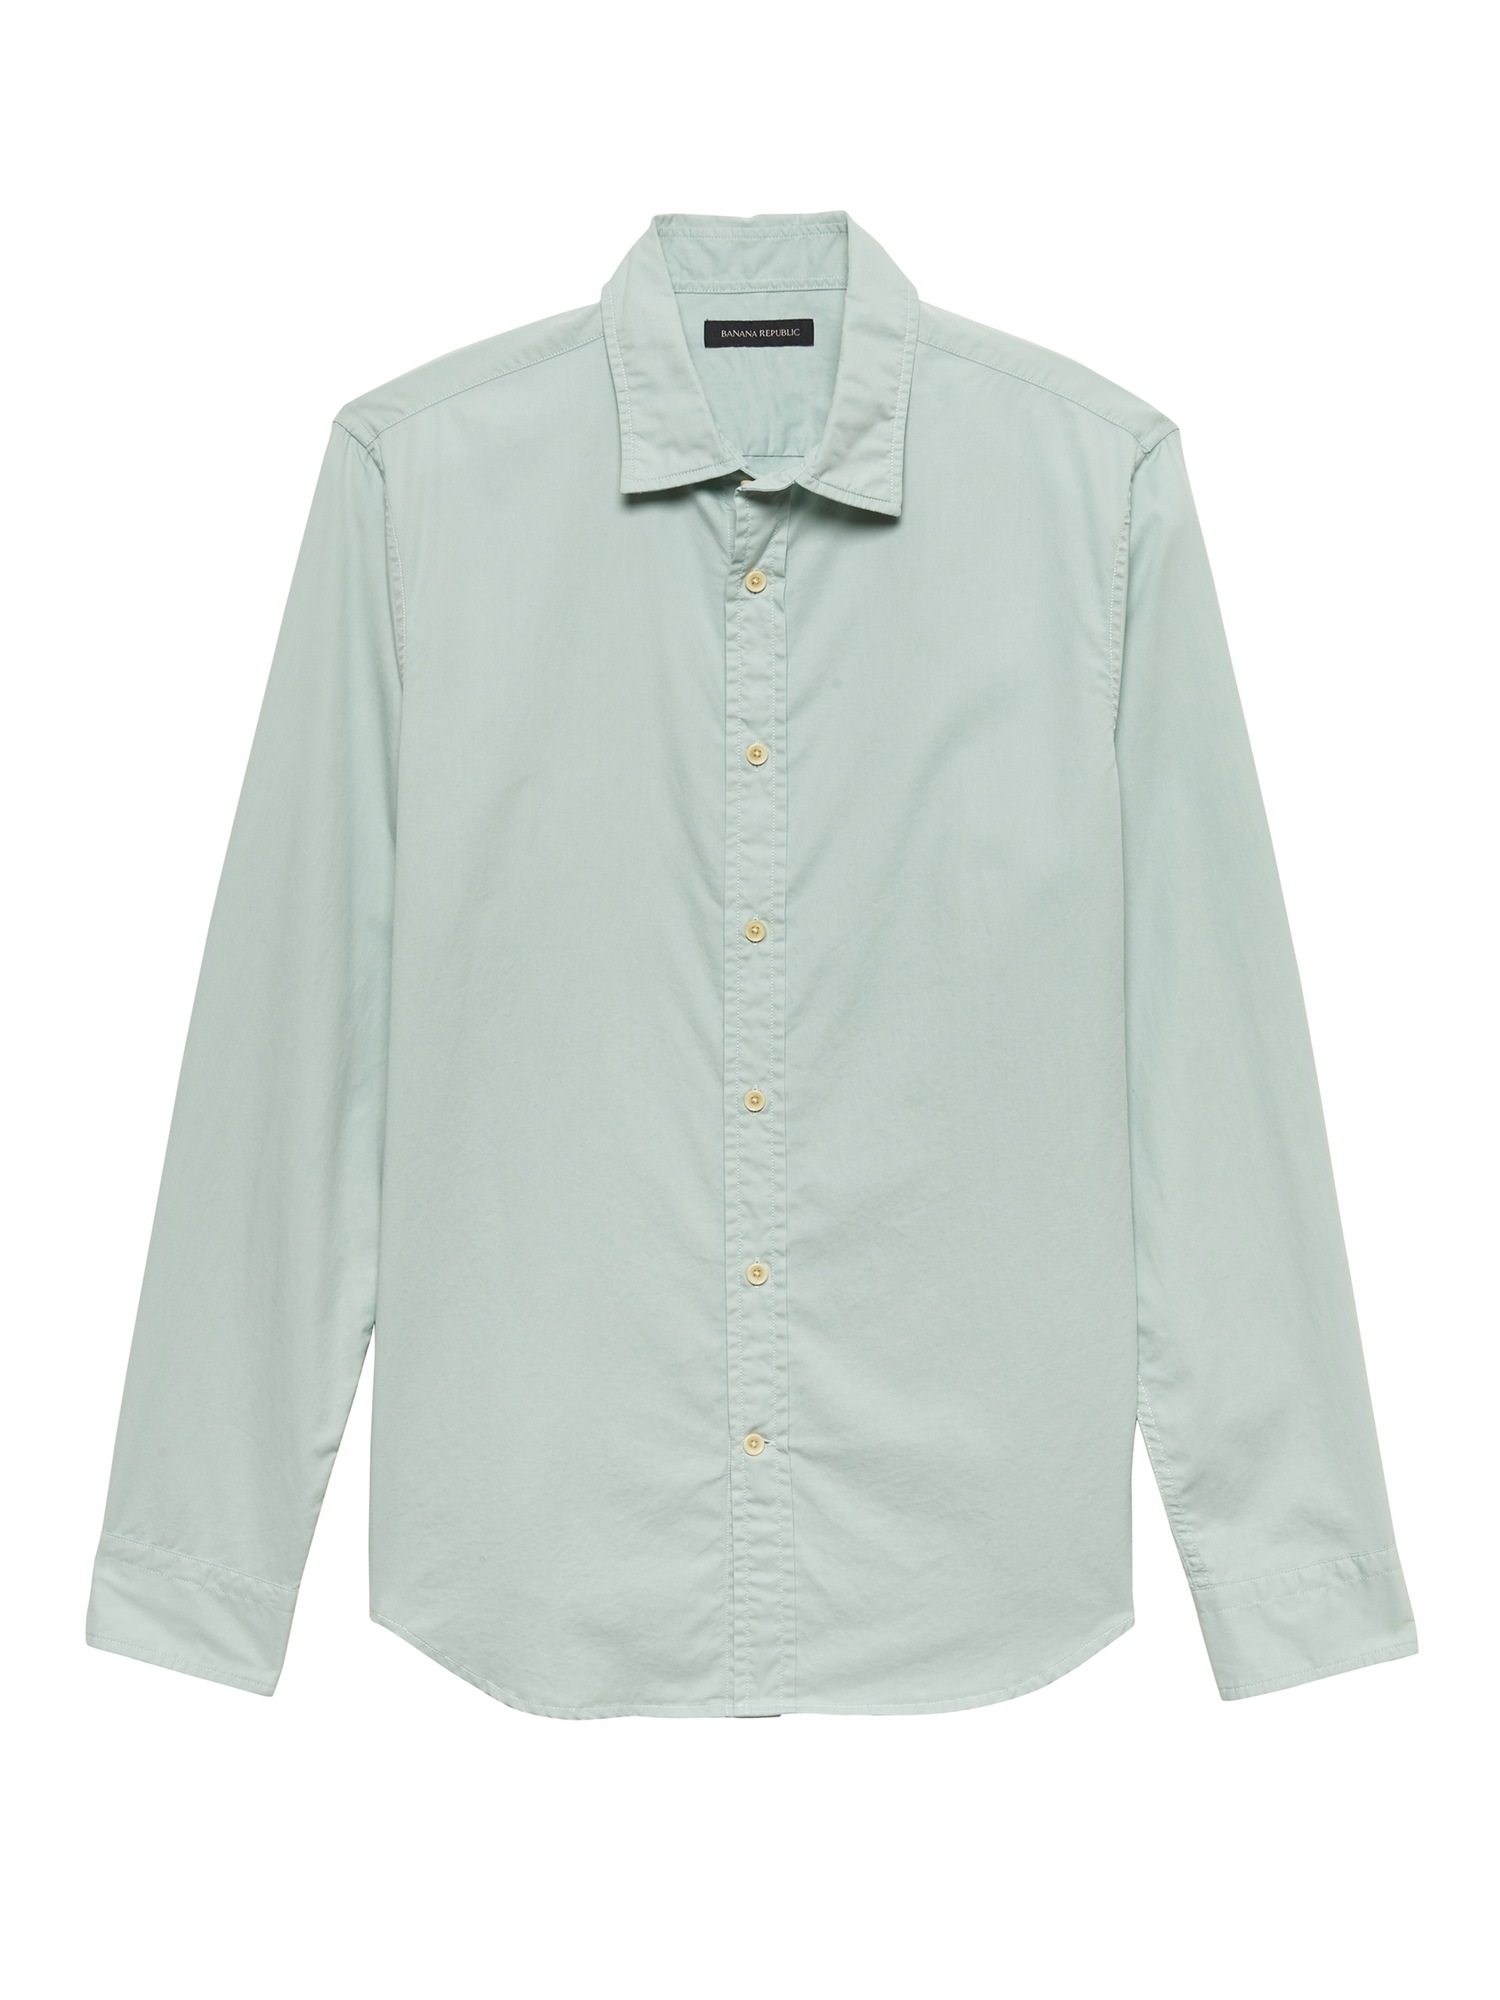 Standard-Fit Cotton Twill Shirt